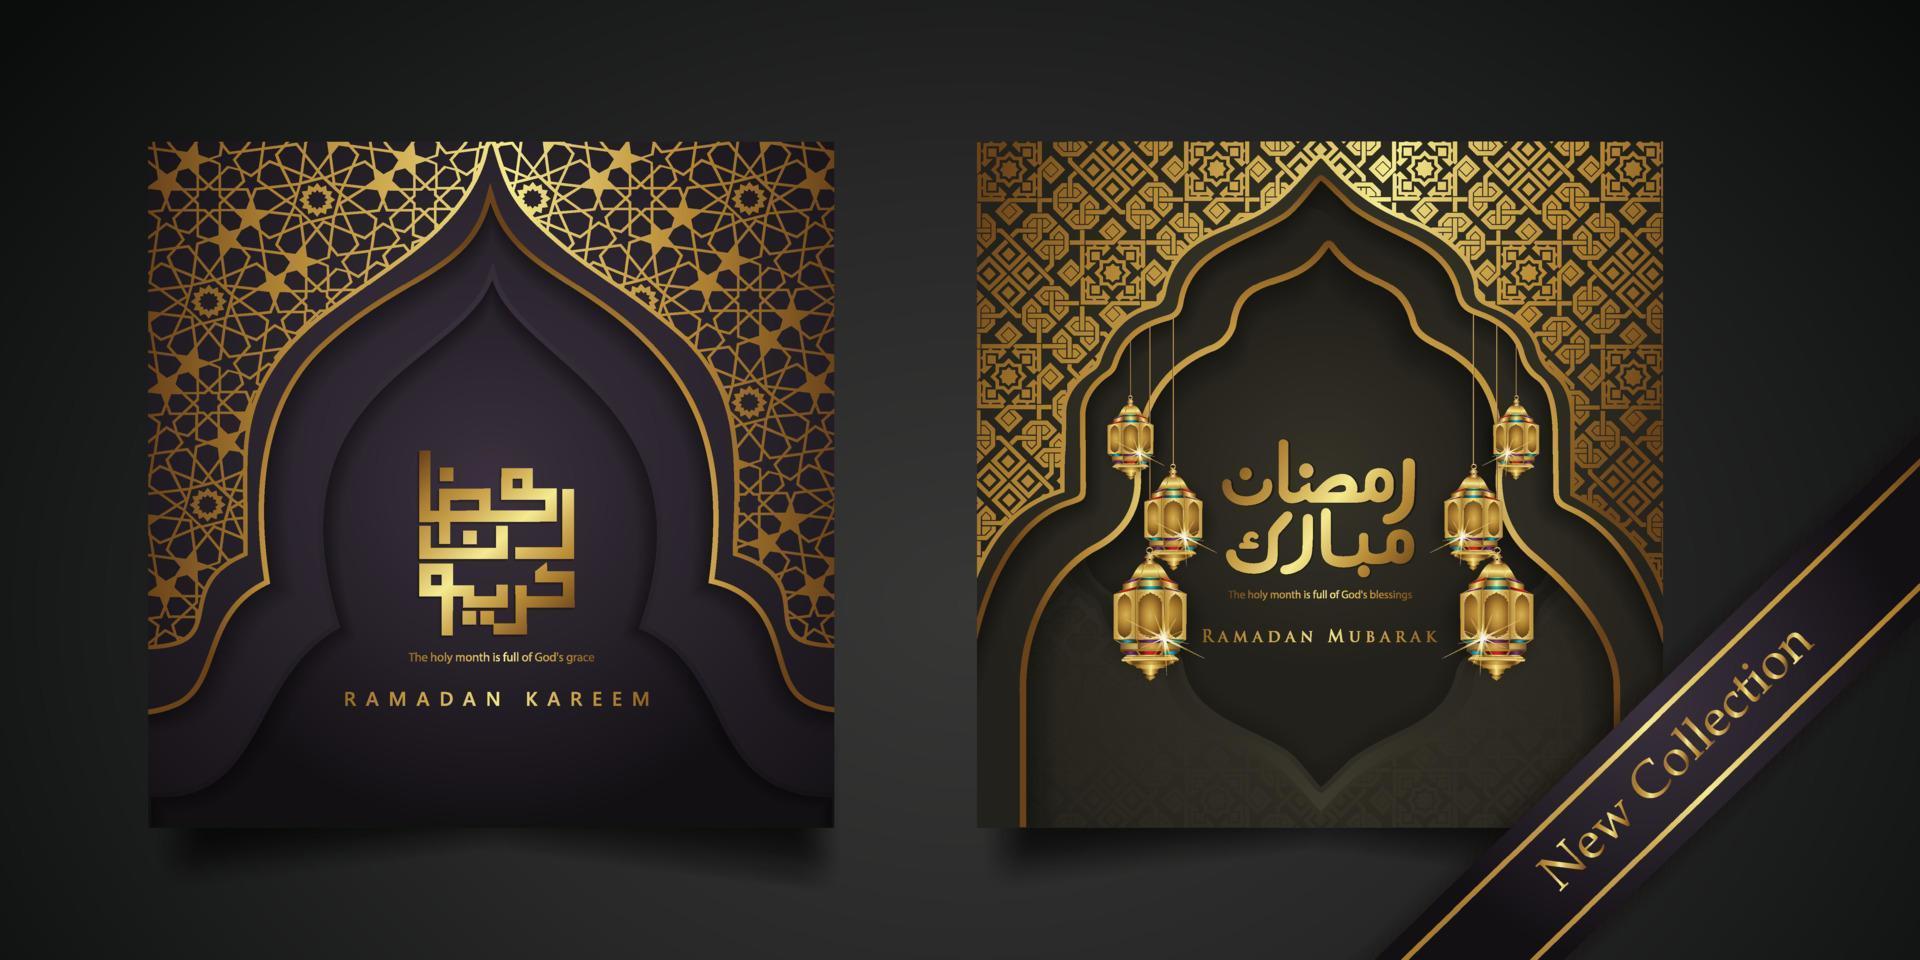 fond de ramadan conception de voeux islamique avec porte de mosquée avec ornement floral et calligraphie arabe. illustration vectorielle vecteur